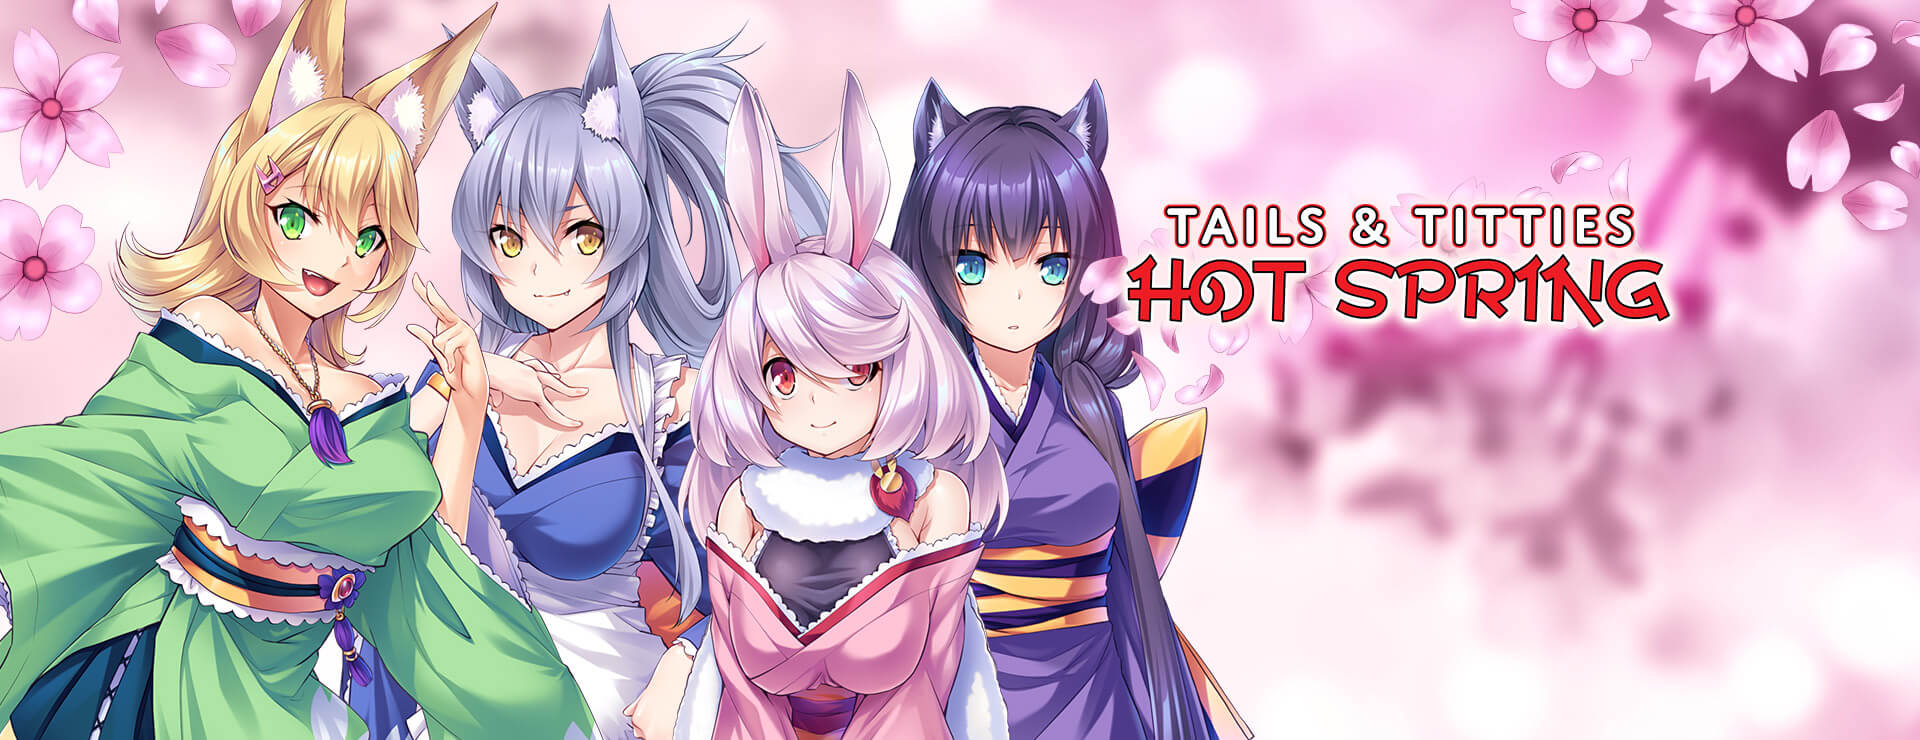 Tails & Titties Hot Spring - Japanisches Adventure Spiel